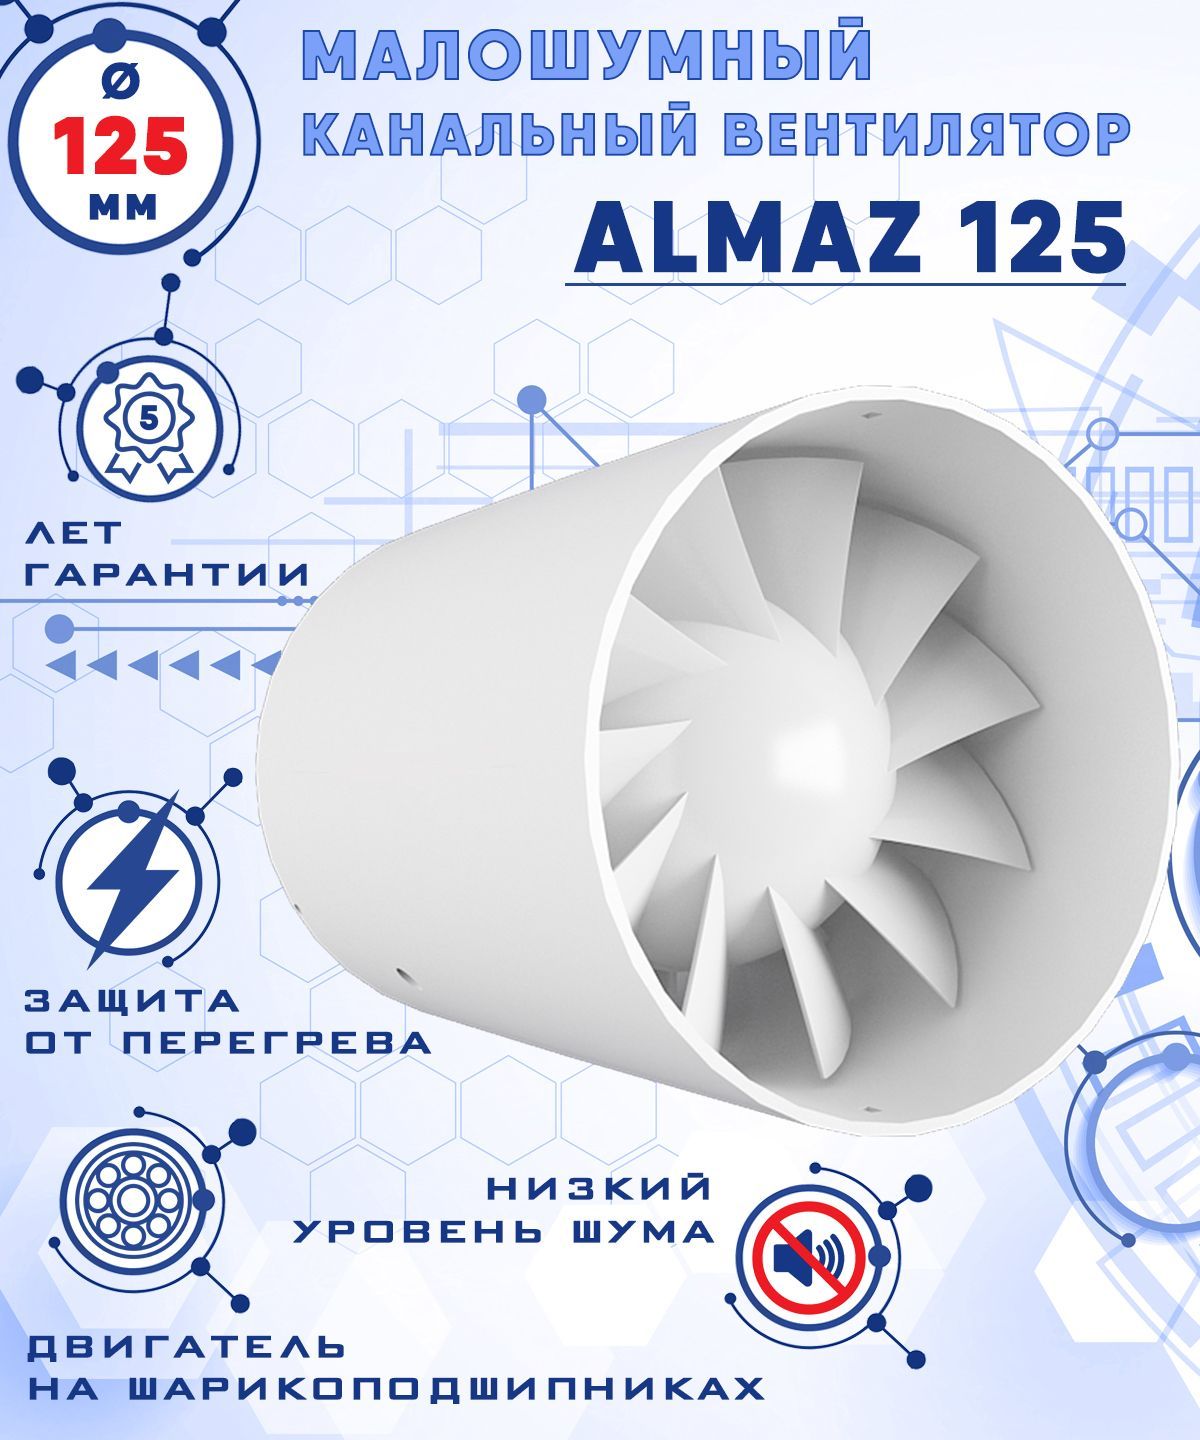 Осевой канальный вентилятор, ALMAZ 125 ZERNBERG